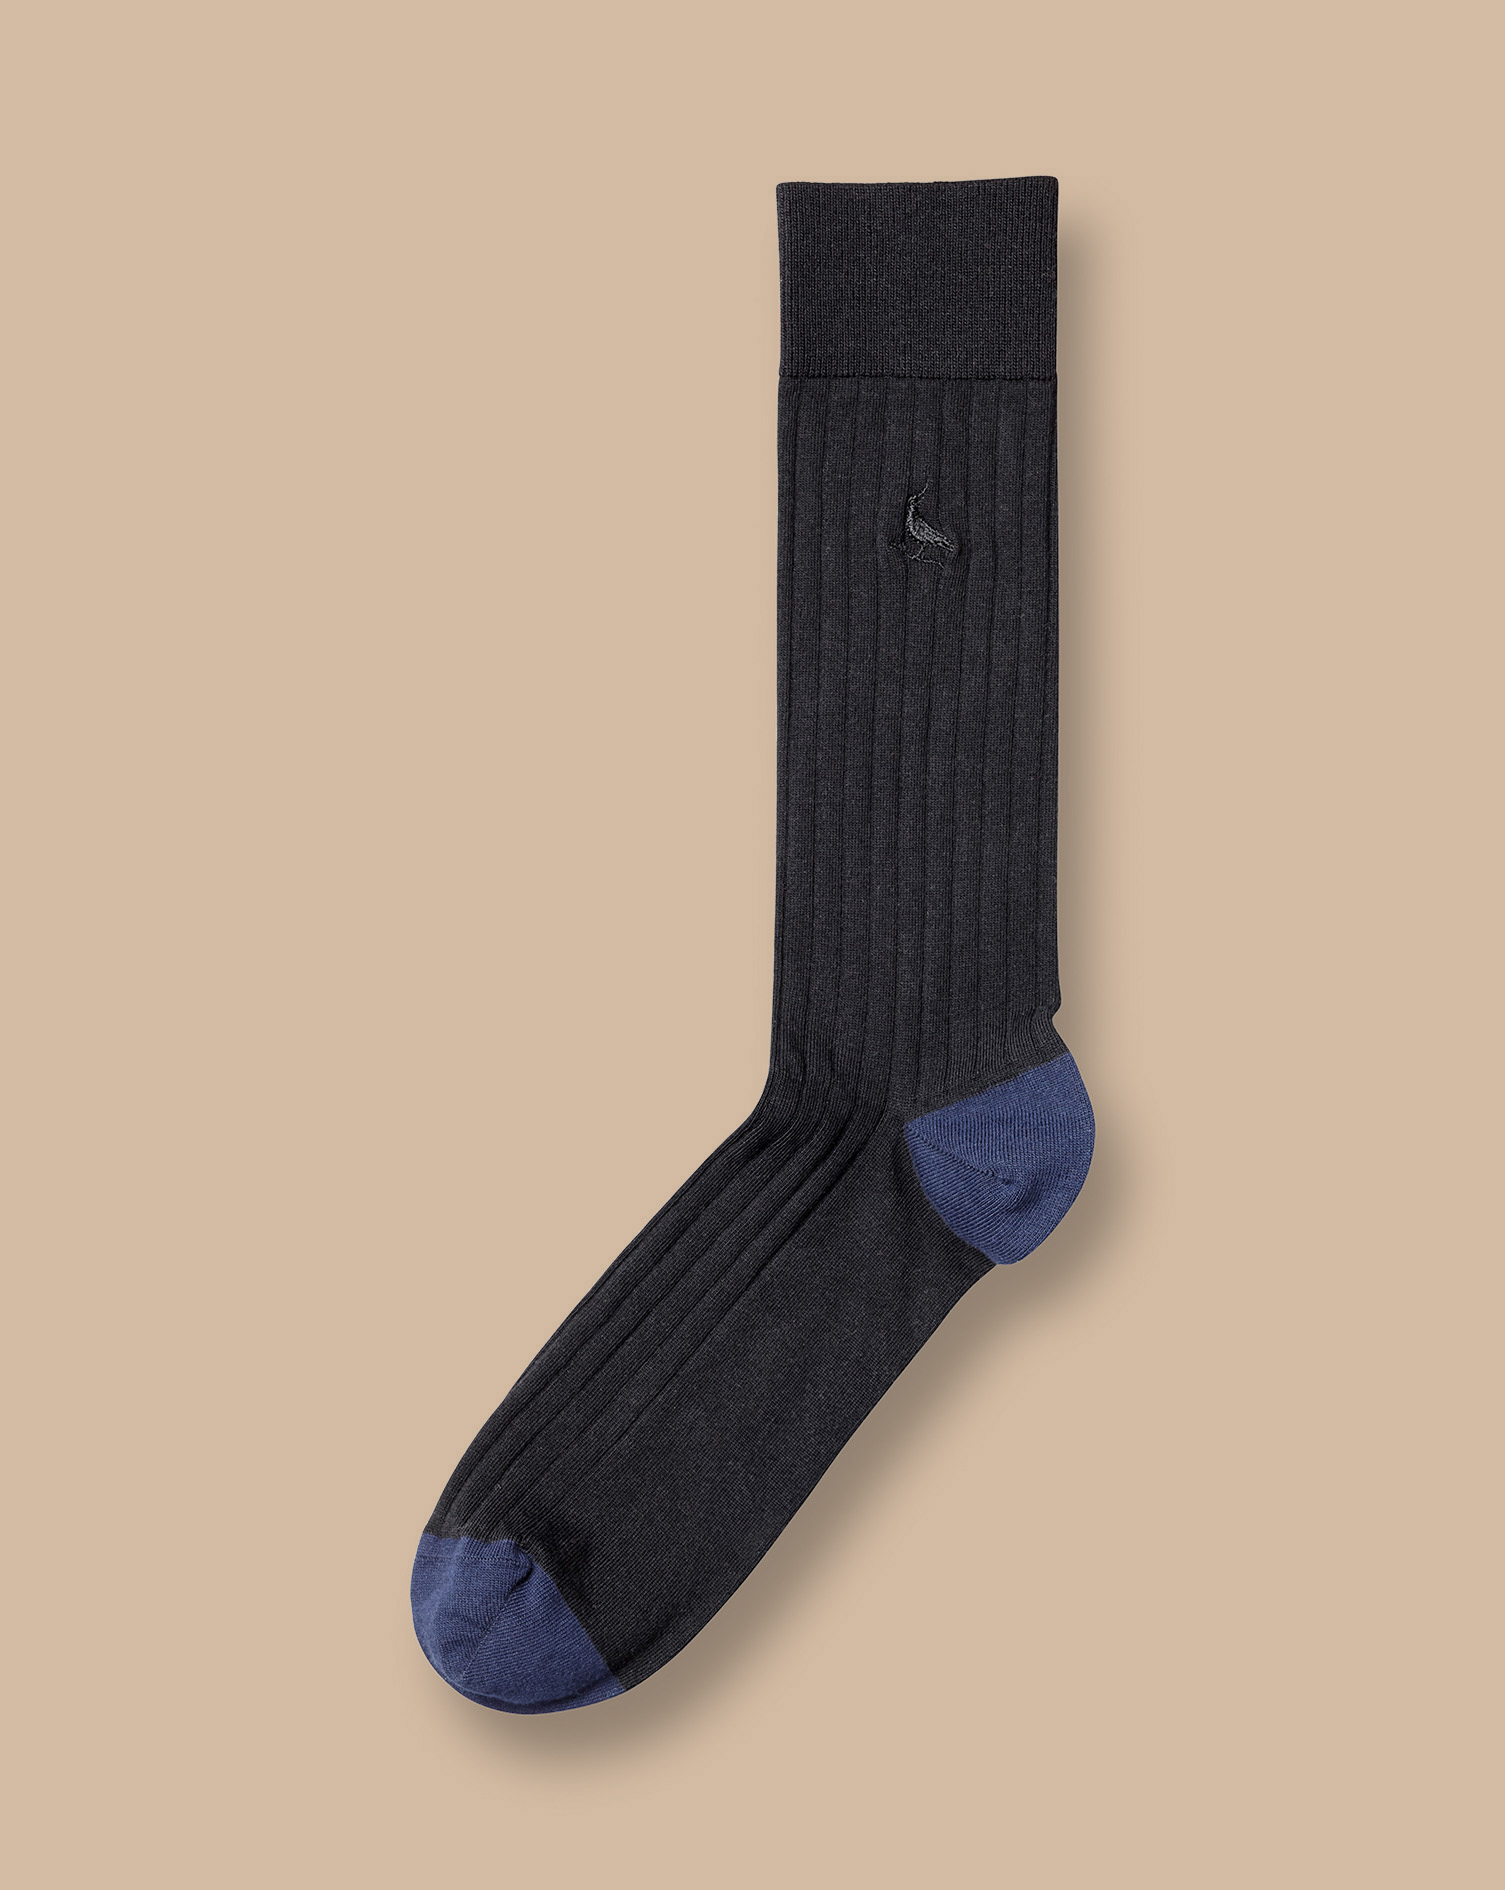 Men's Charles Tyrwhitt Rib Socks - Black Size 10.5-13 Cotton
